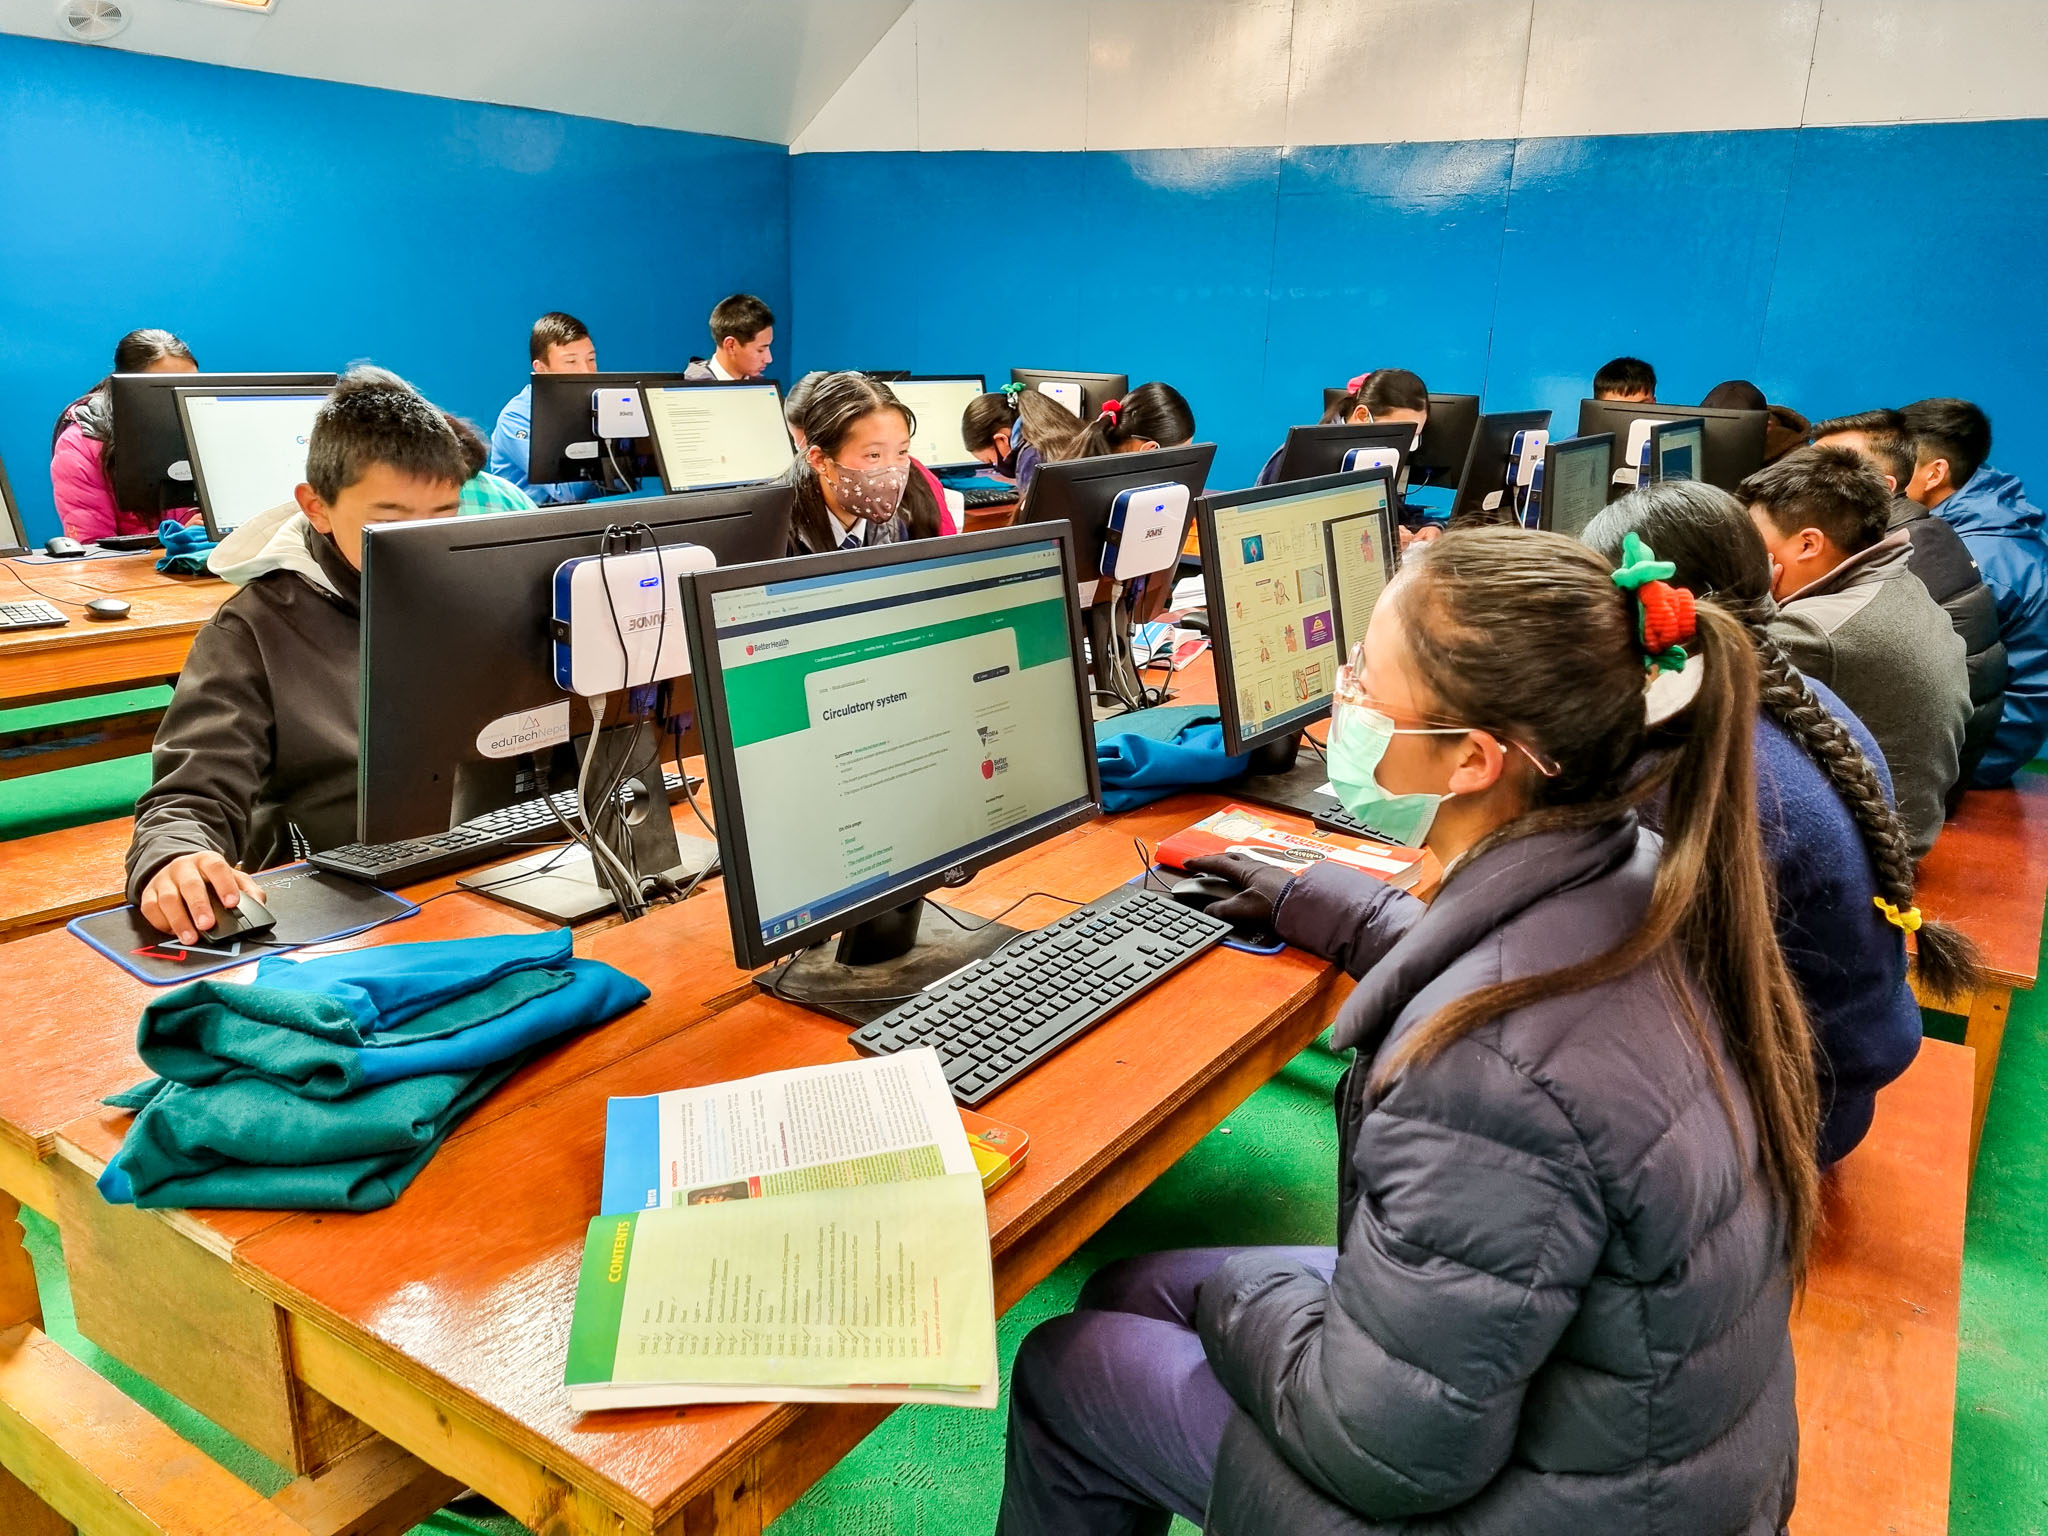 Imagem aberta de um laboratório de informática onde crianças de diferentes idades estão sentadas cada uma em frente a um computador fazendo pesquisas na Internet.